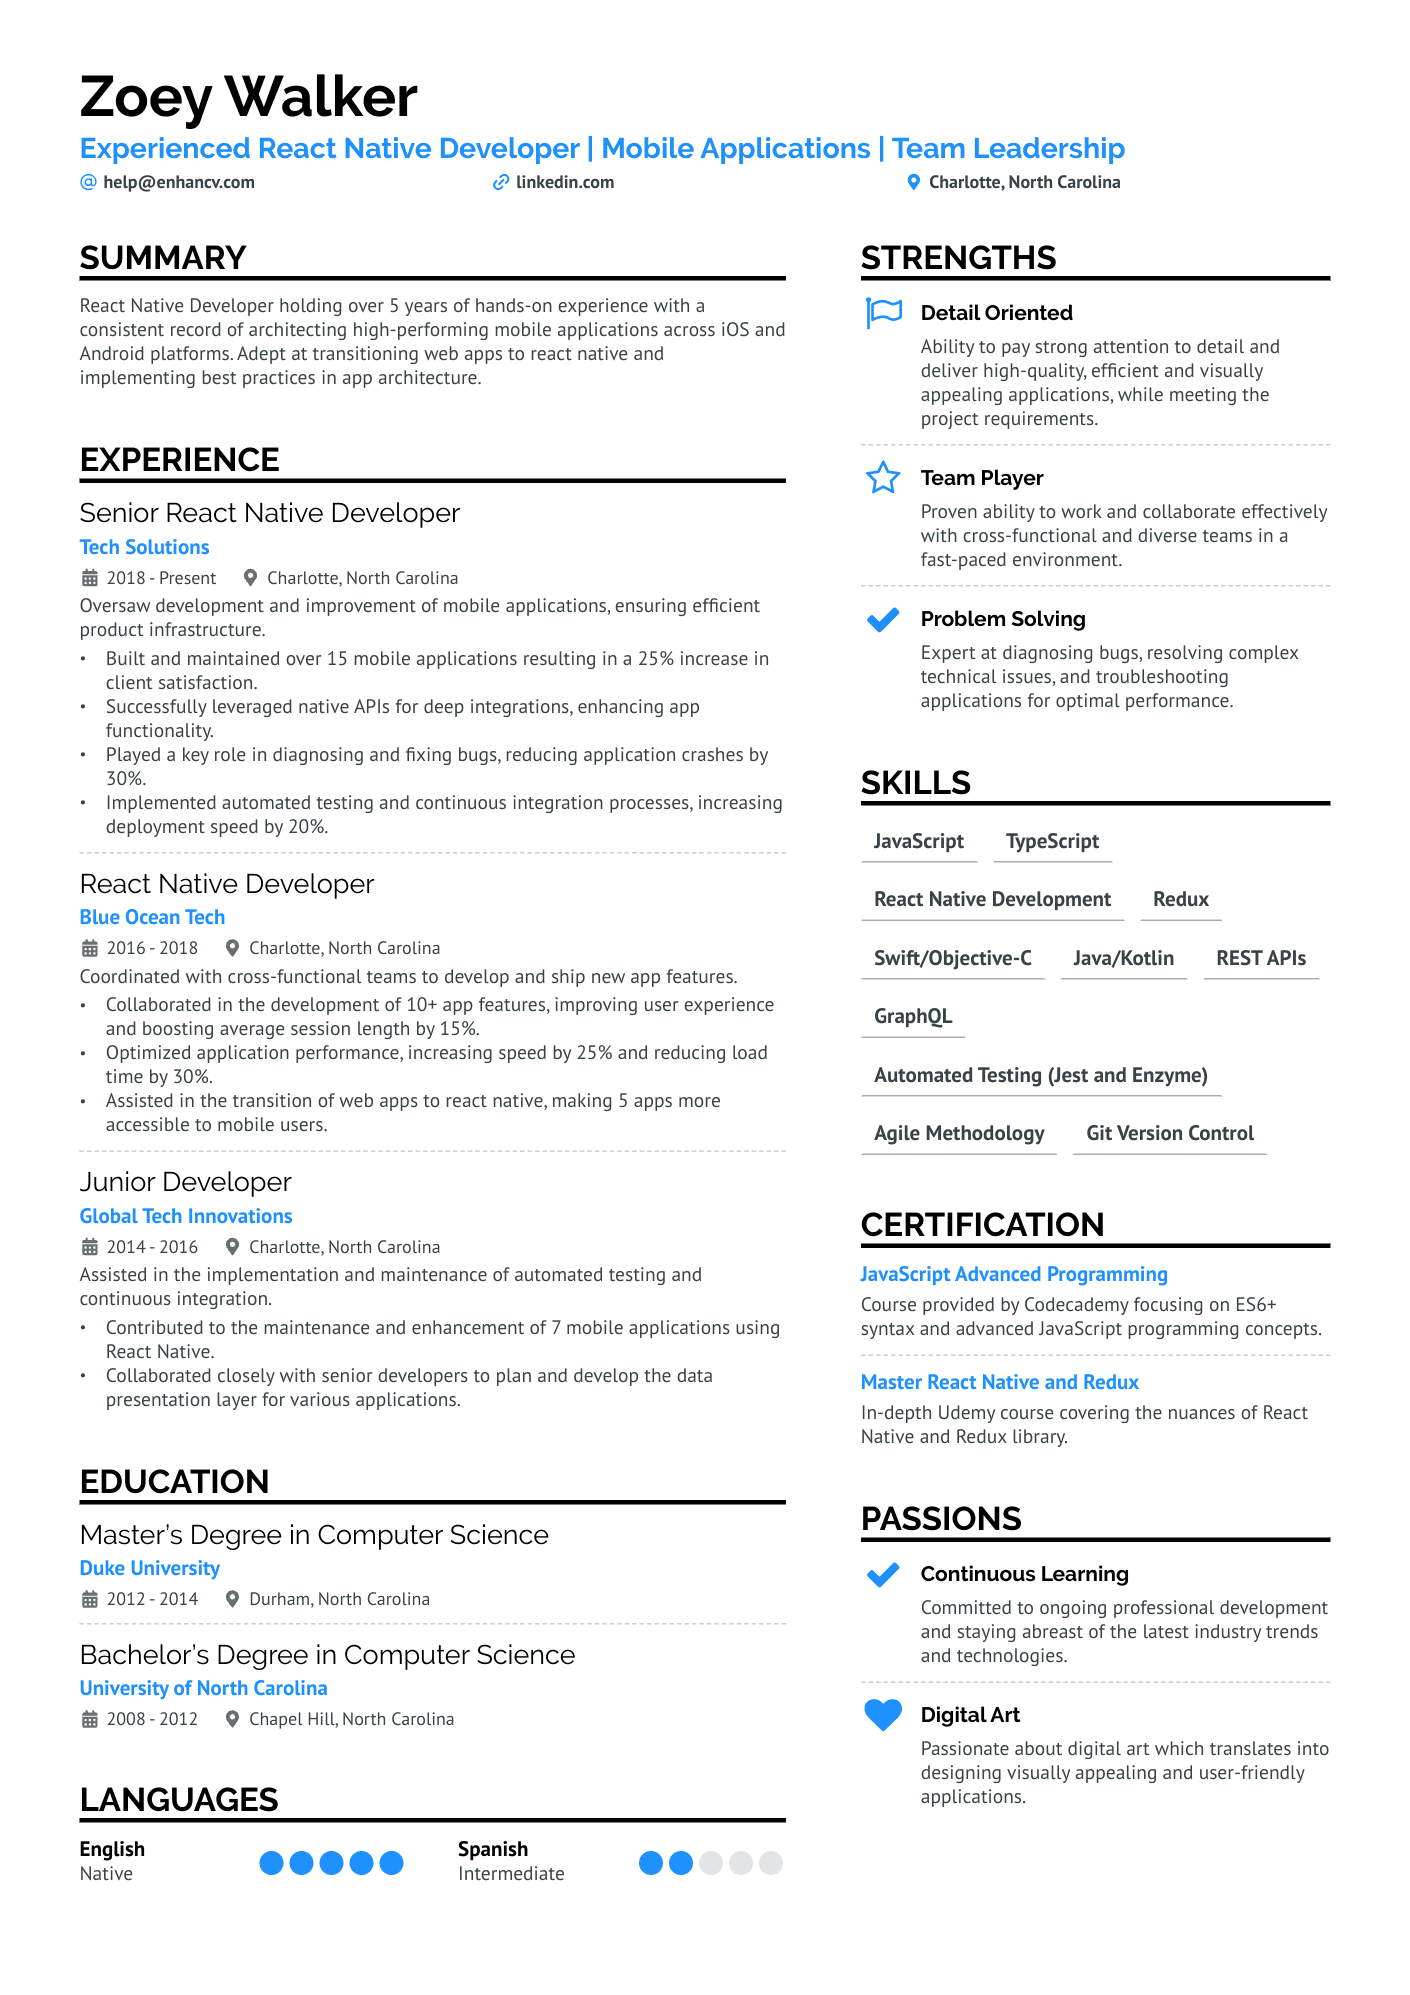 sample resume for react developer fresher